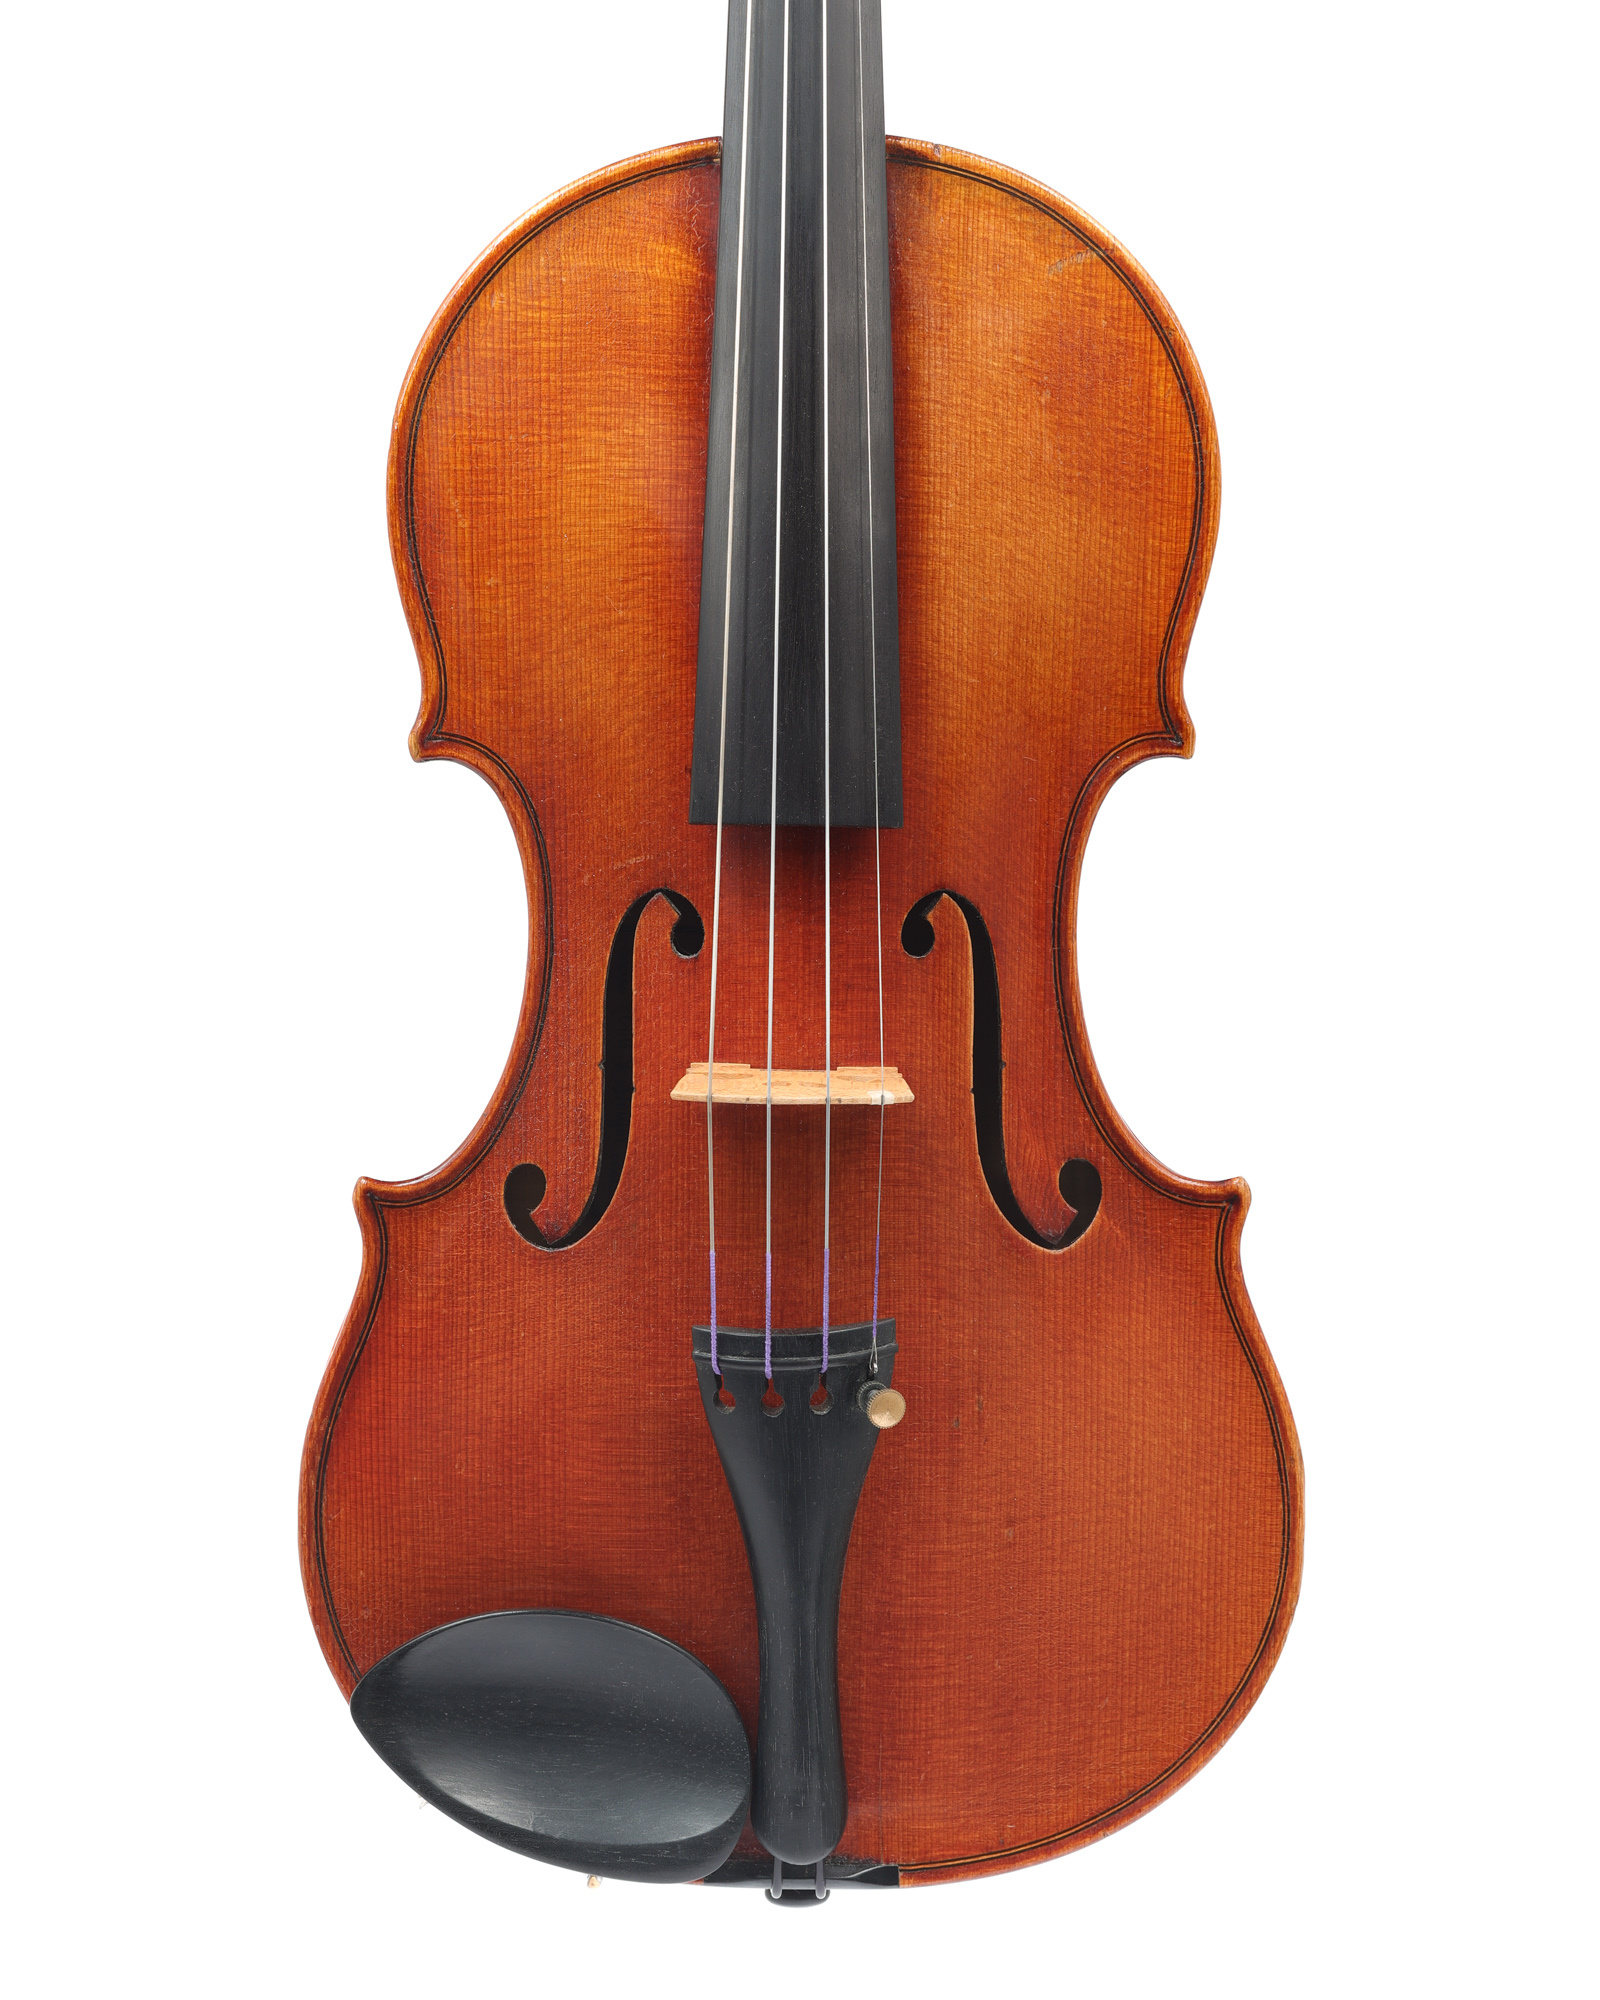 Voit & Geiger violin, 1925, Chicago, USA